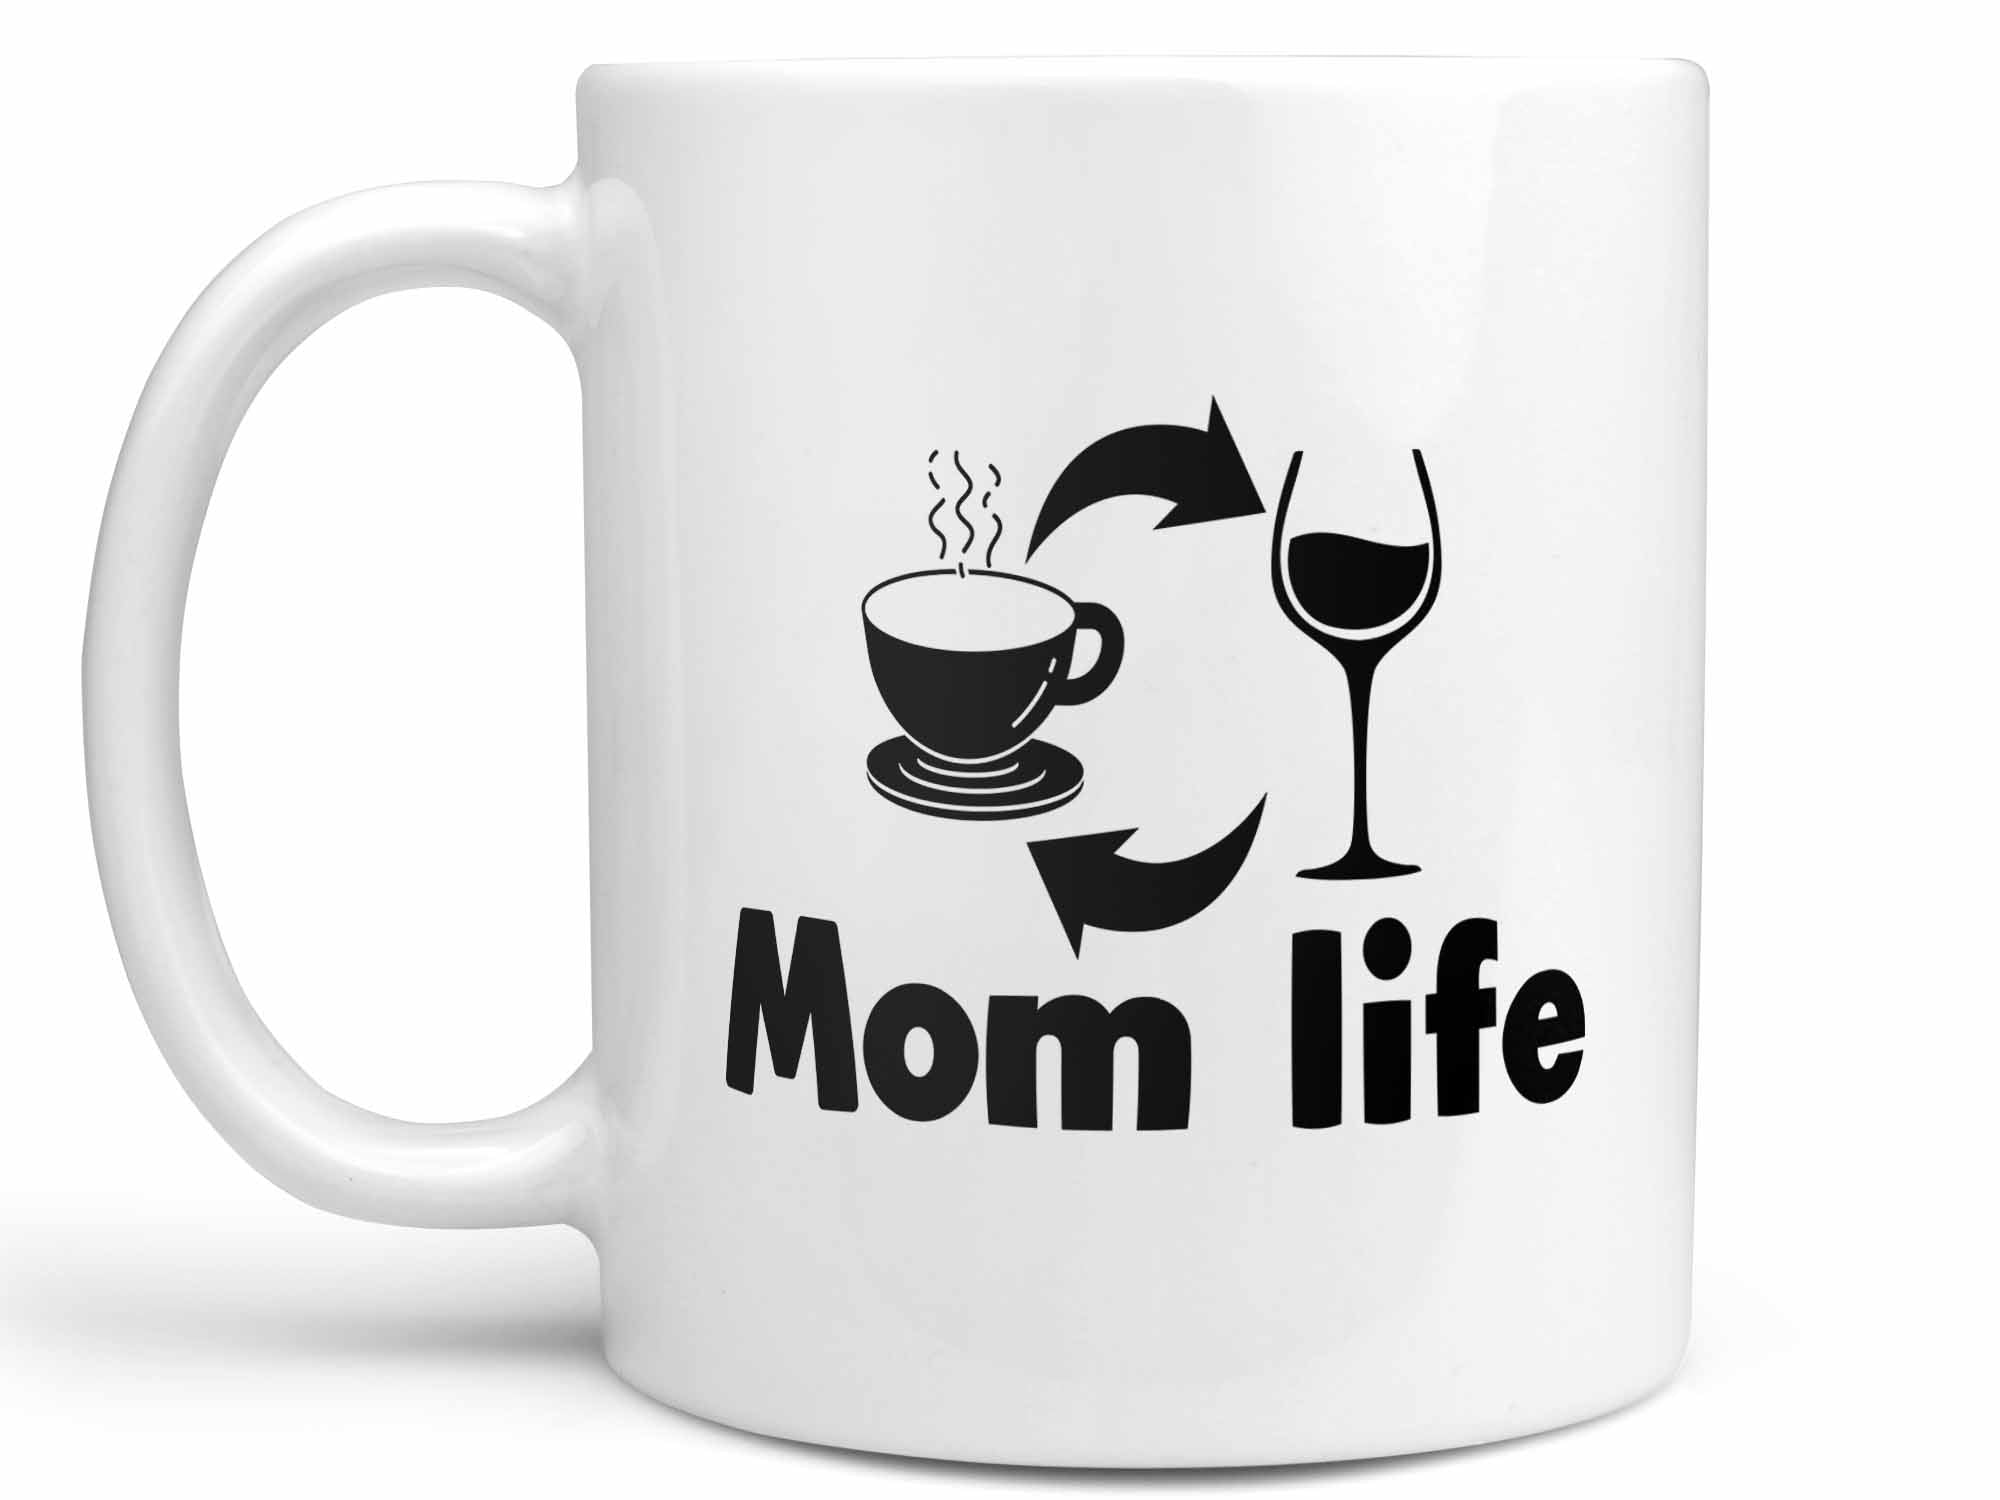 Mom Life Coffee Mug